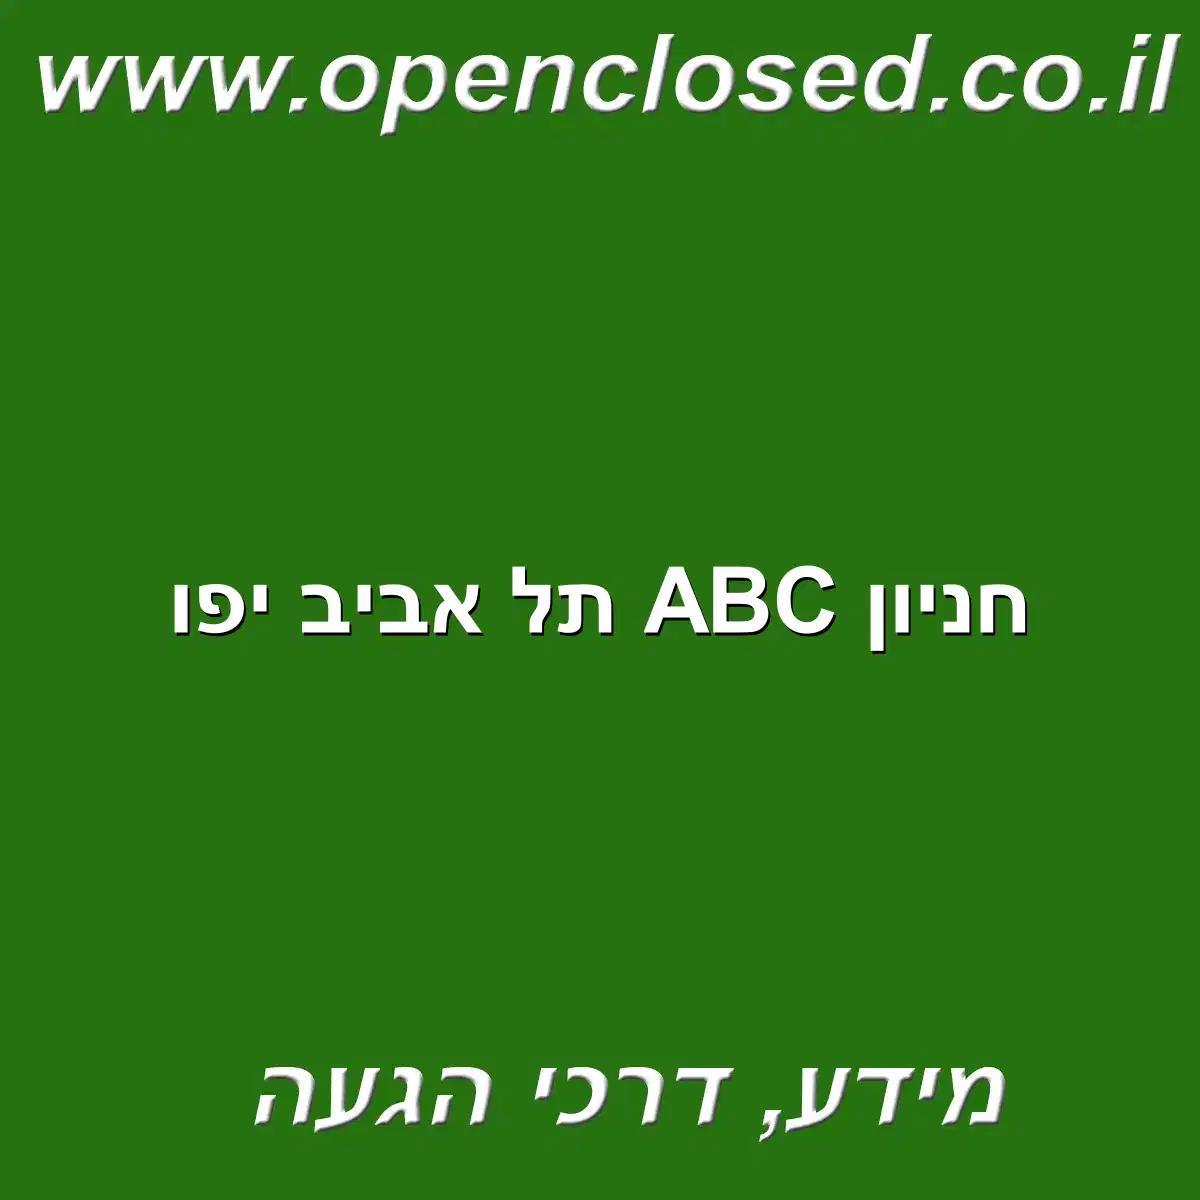 חניון ABC תל אביב יפו